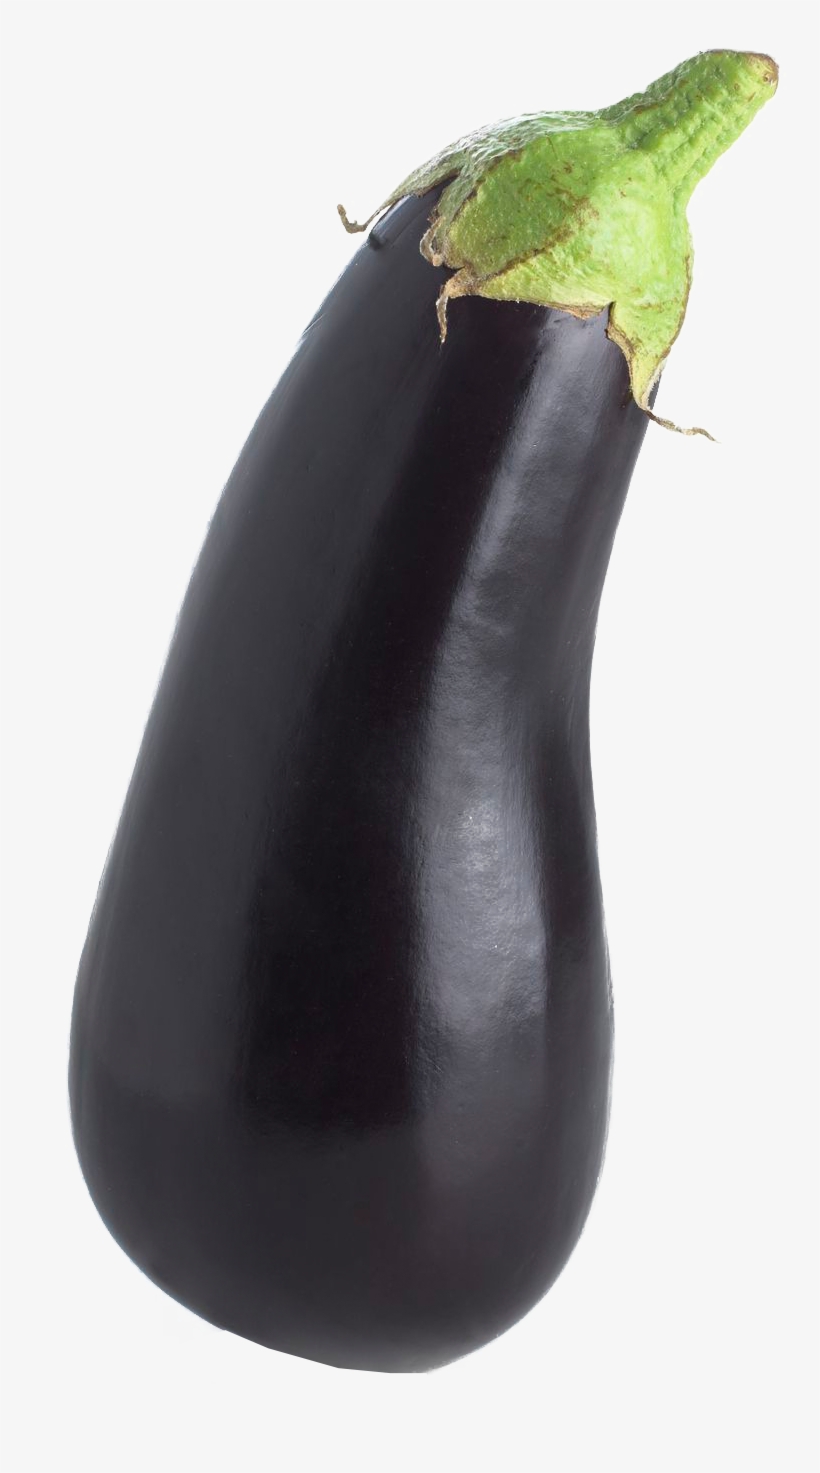 Eggplant Png, transparent png #1522901